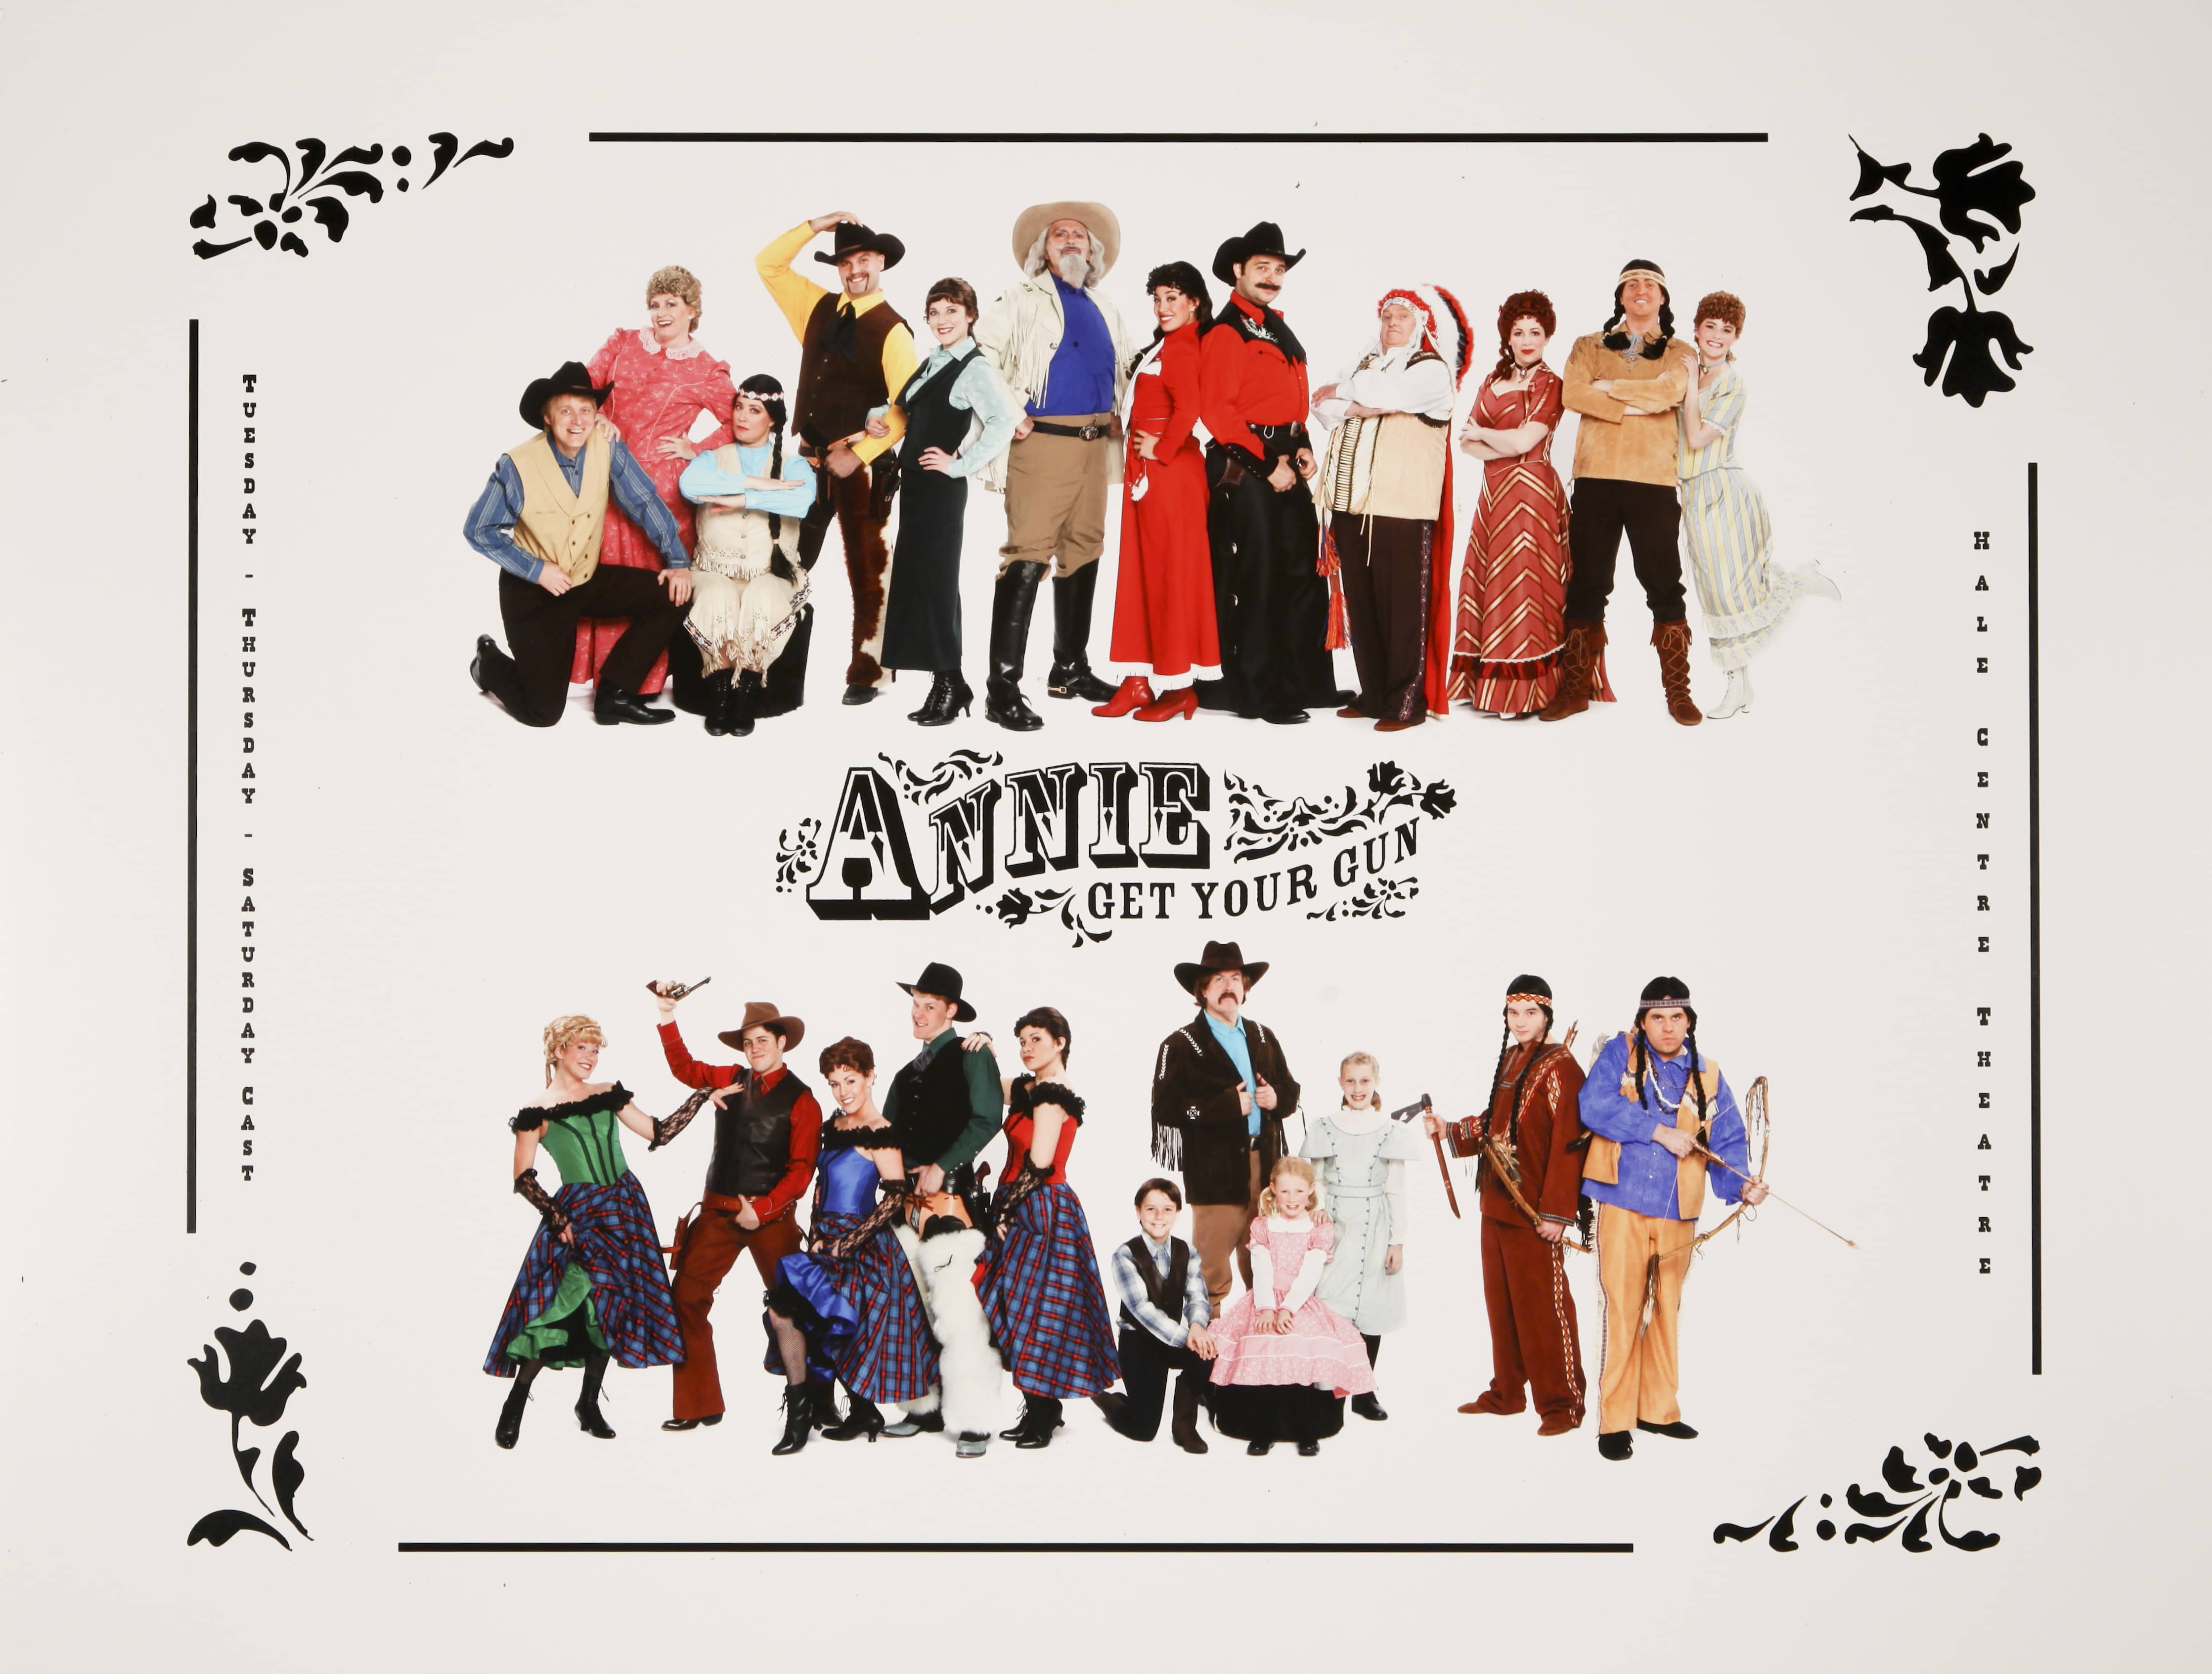 Hale Centre Theatre's 2008 Annie Get Your Gun Cast